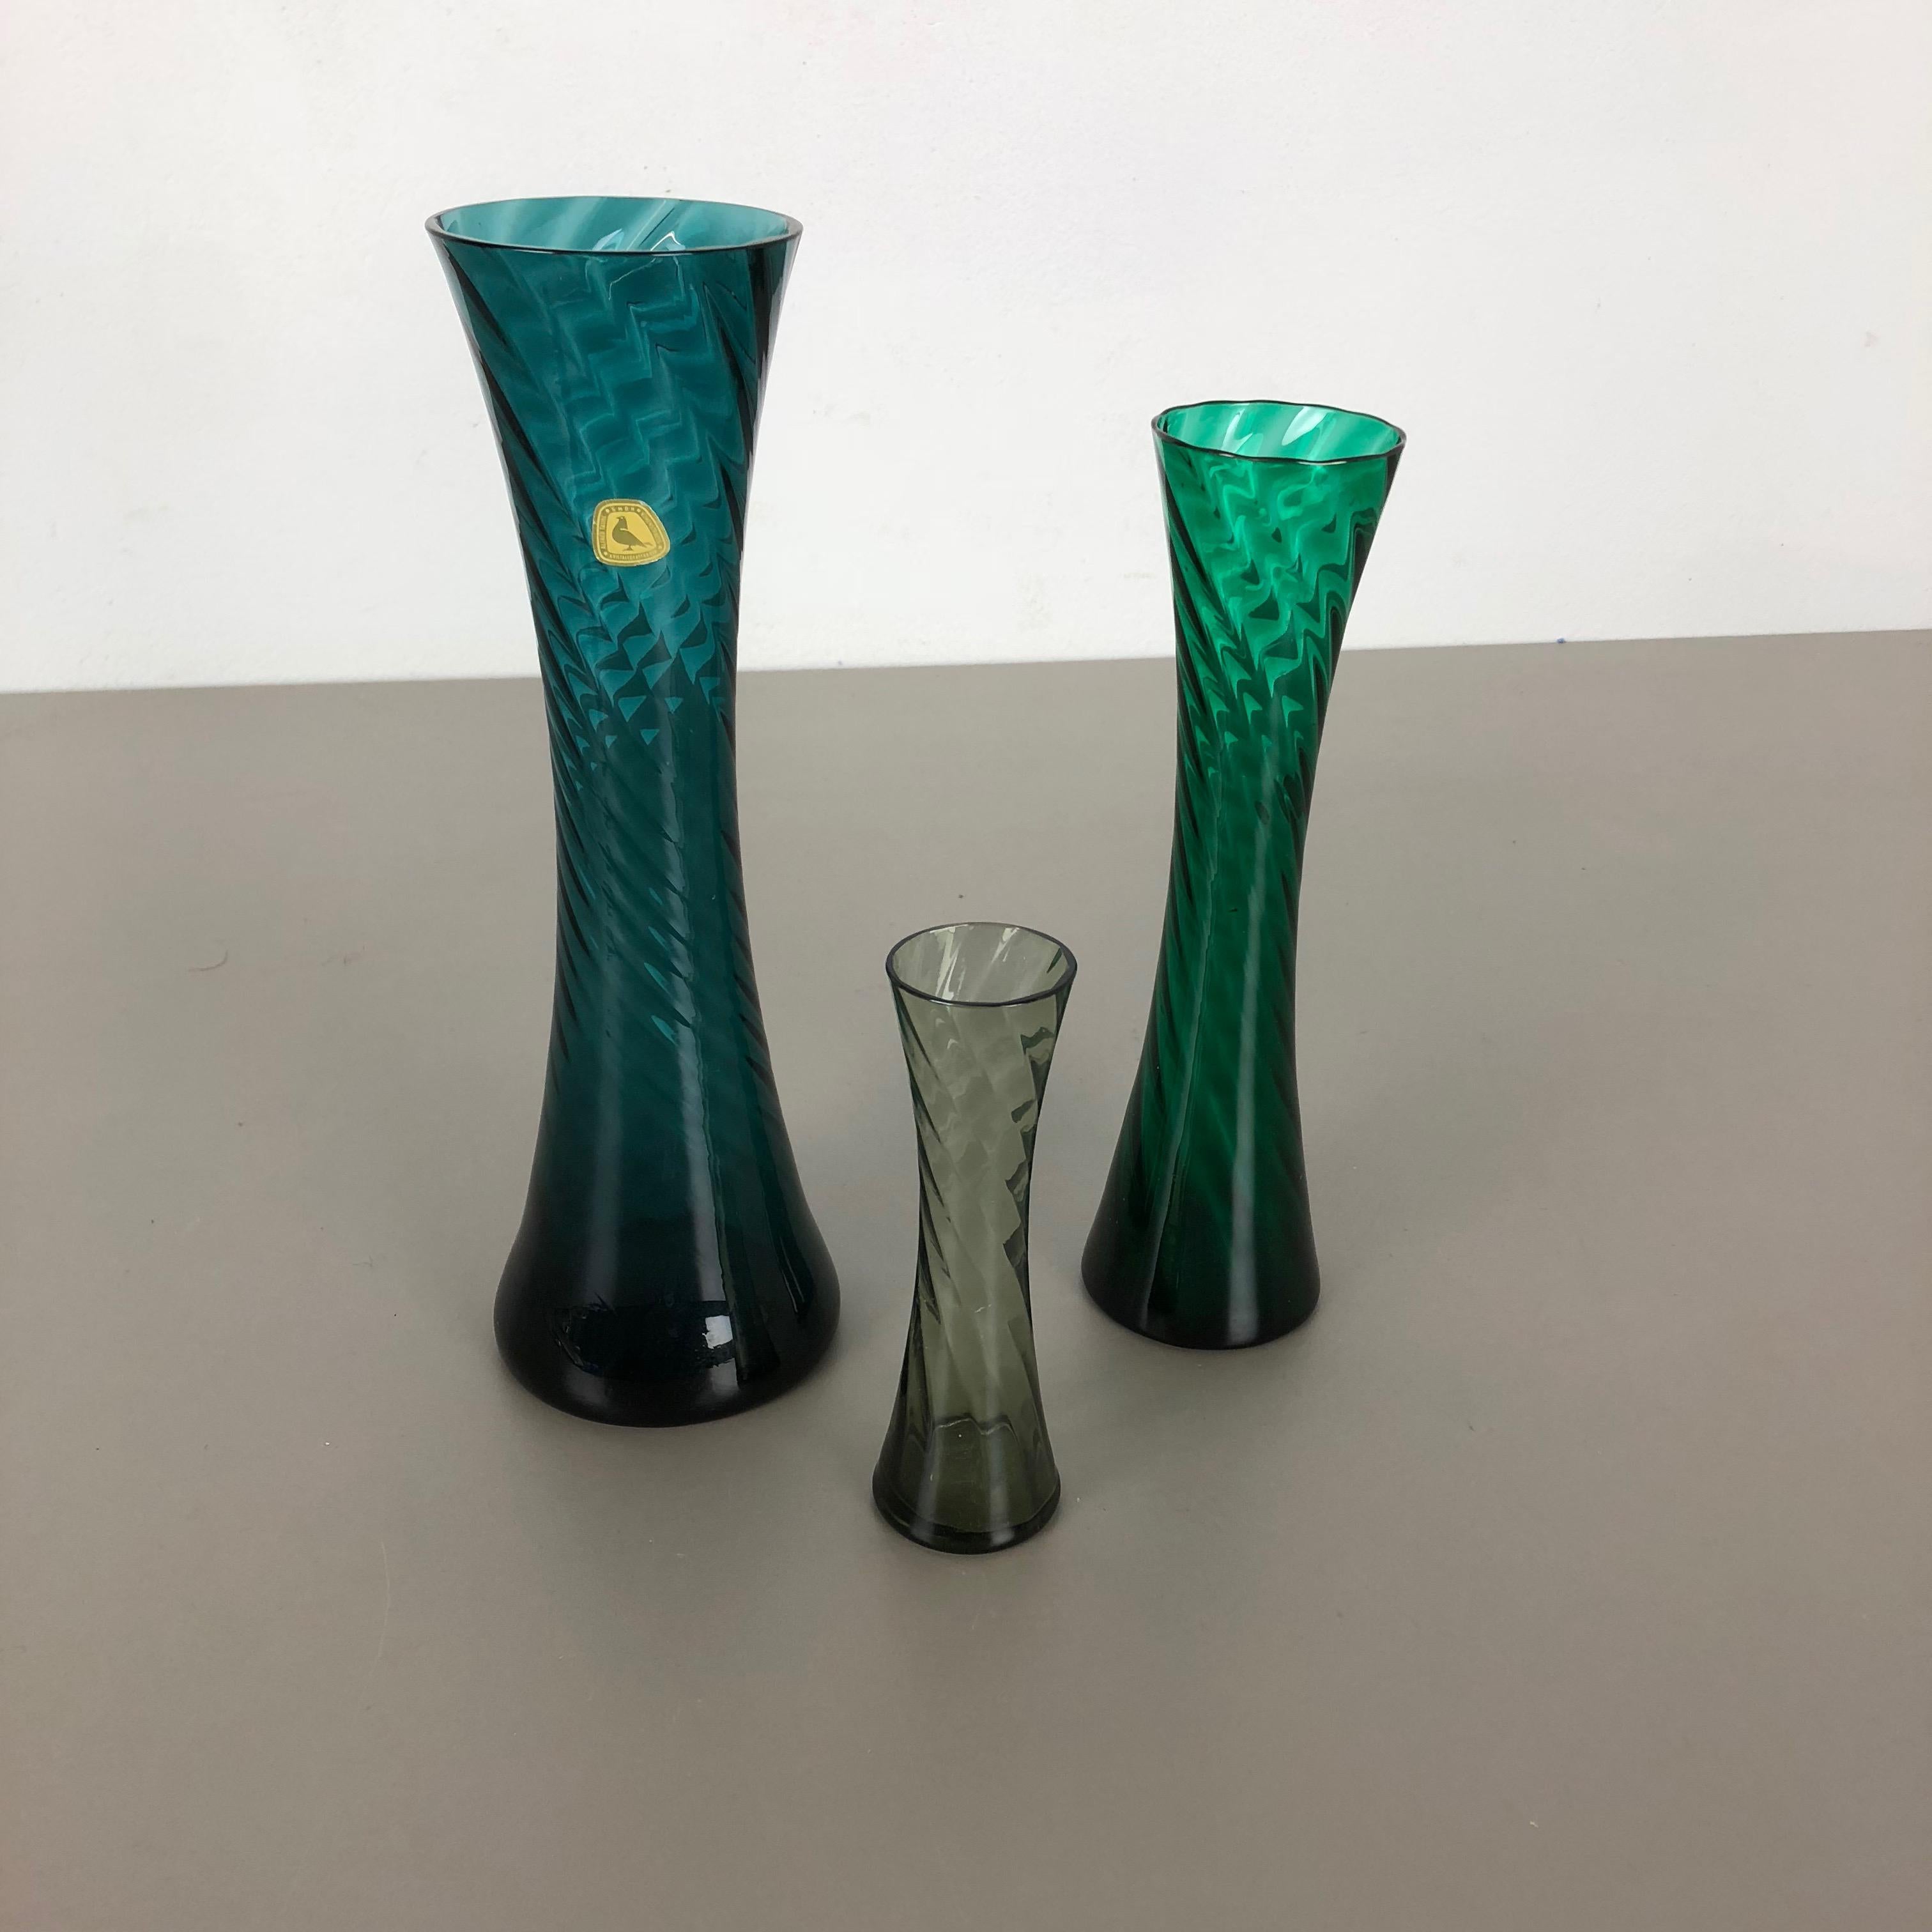 Artikel:

Satz von drei Kristallvasen


Produzent:

Alfred Taube Kristallglasfabrik, Deutschland



Jahrzehnt:

1960s


  

Diese originalen Vintage-Vasen wurden in den 1960er Jahren in Deutschland hergestellt. Sie besteht aus